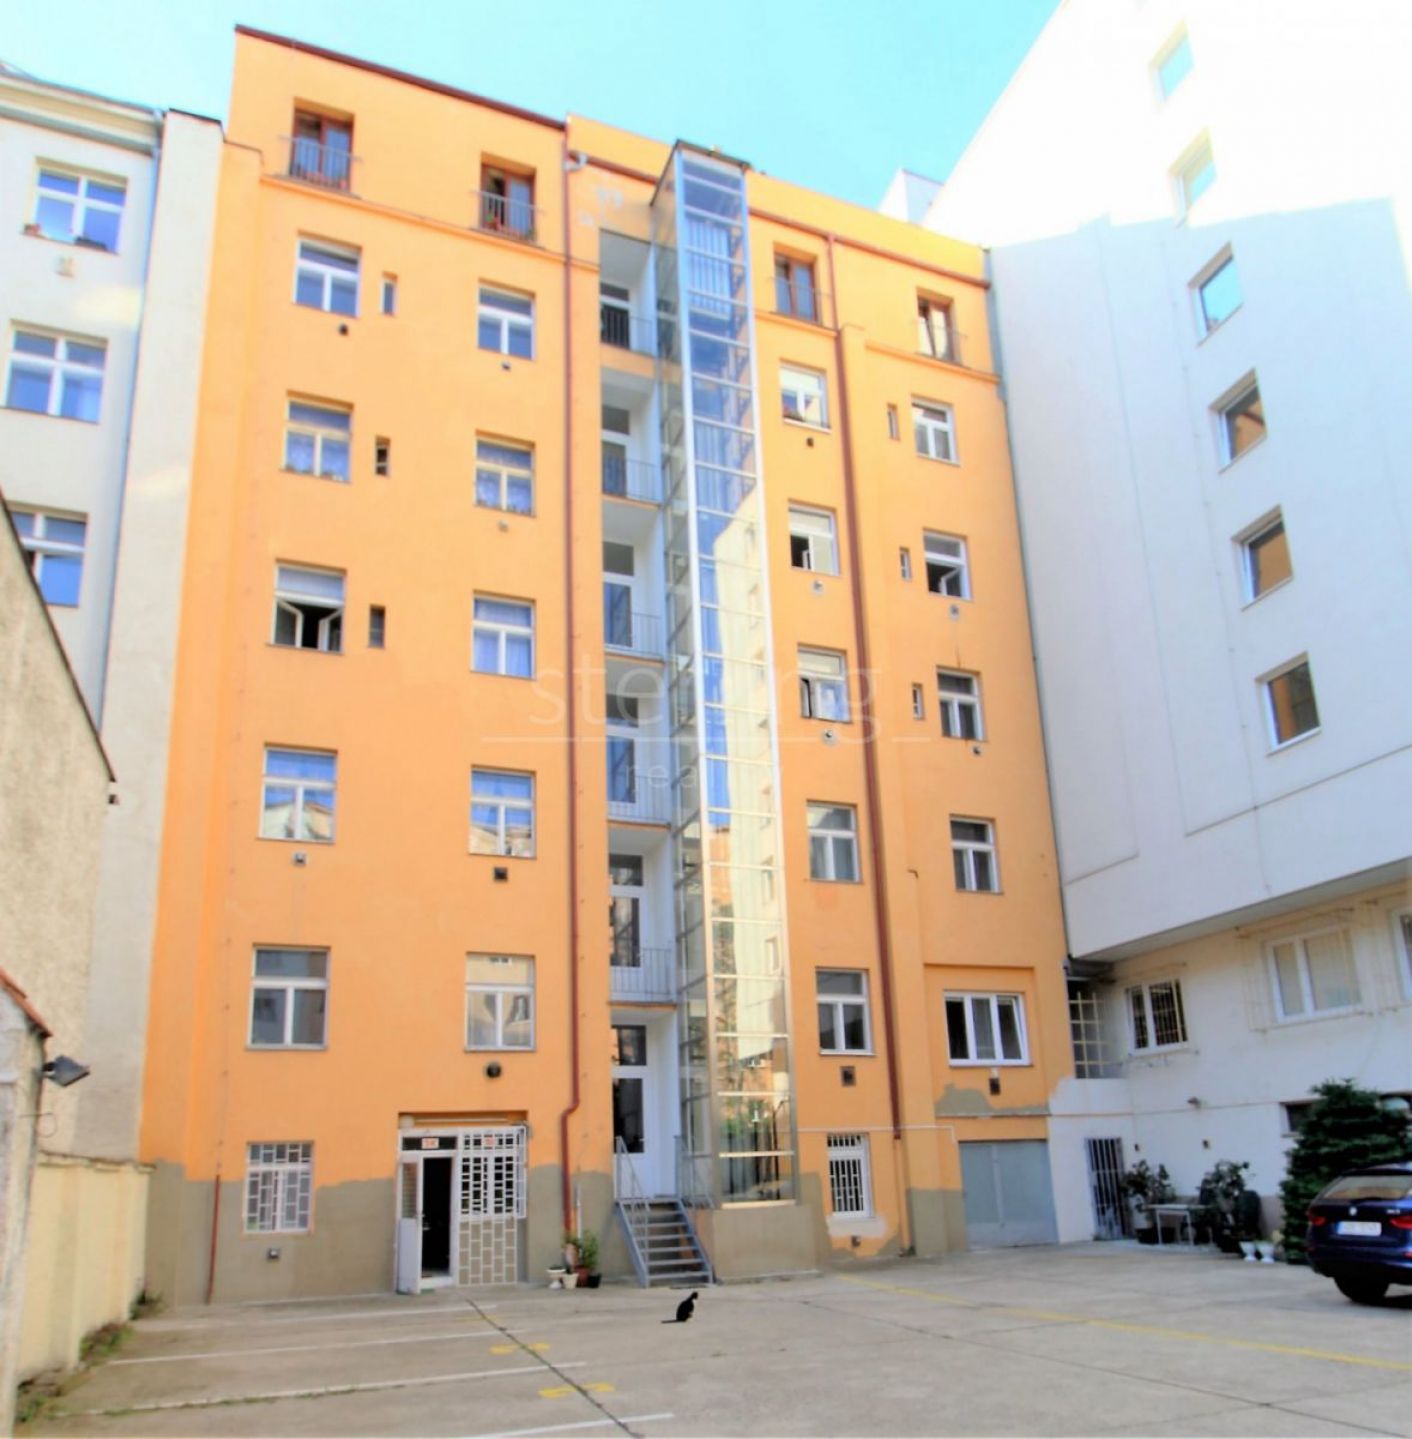 Pronájem bytu 2+kk v ulici Vršovická, Praha 10 - Vršovice, nezařízený, k nastěhování od 1.11., obrázek č. 1